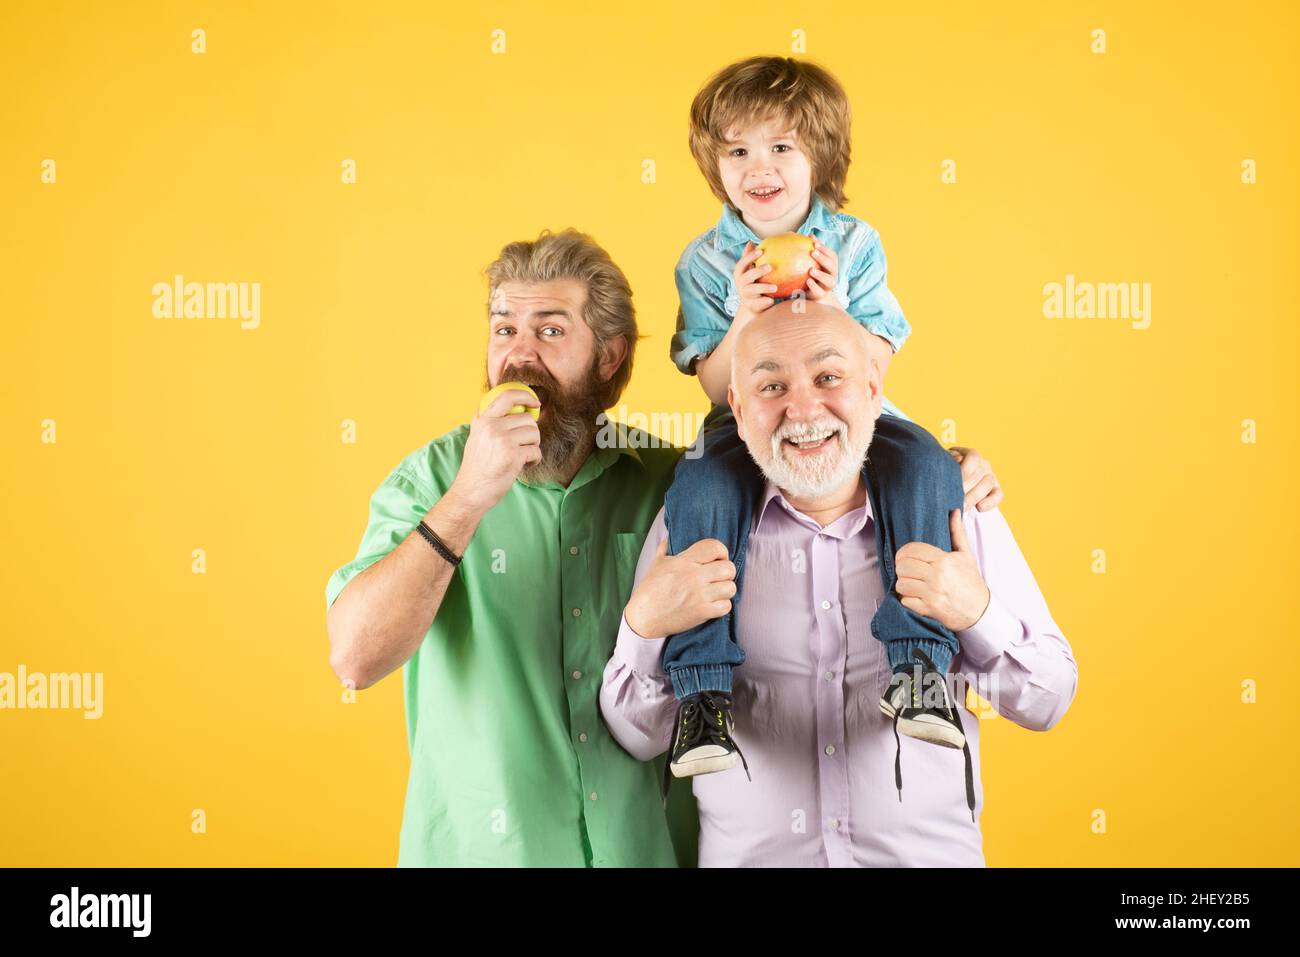 Grand-père père et grand fils embrassant et mangeant de la pomme.Hommes de différents âges, isolés sur le jaune. Banque D'Images